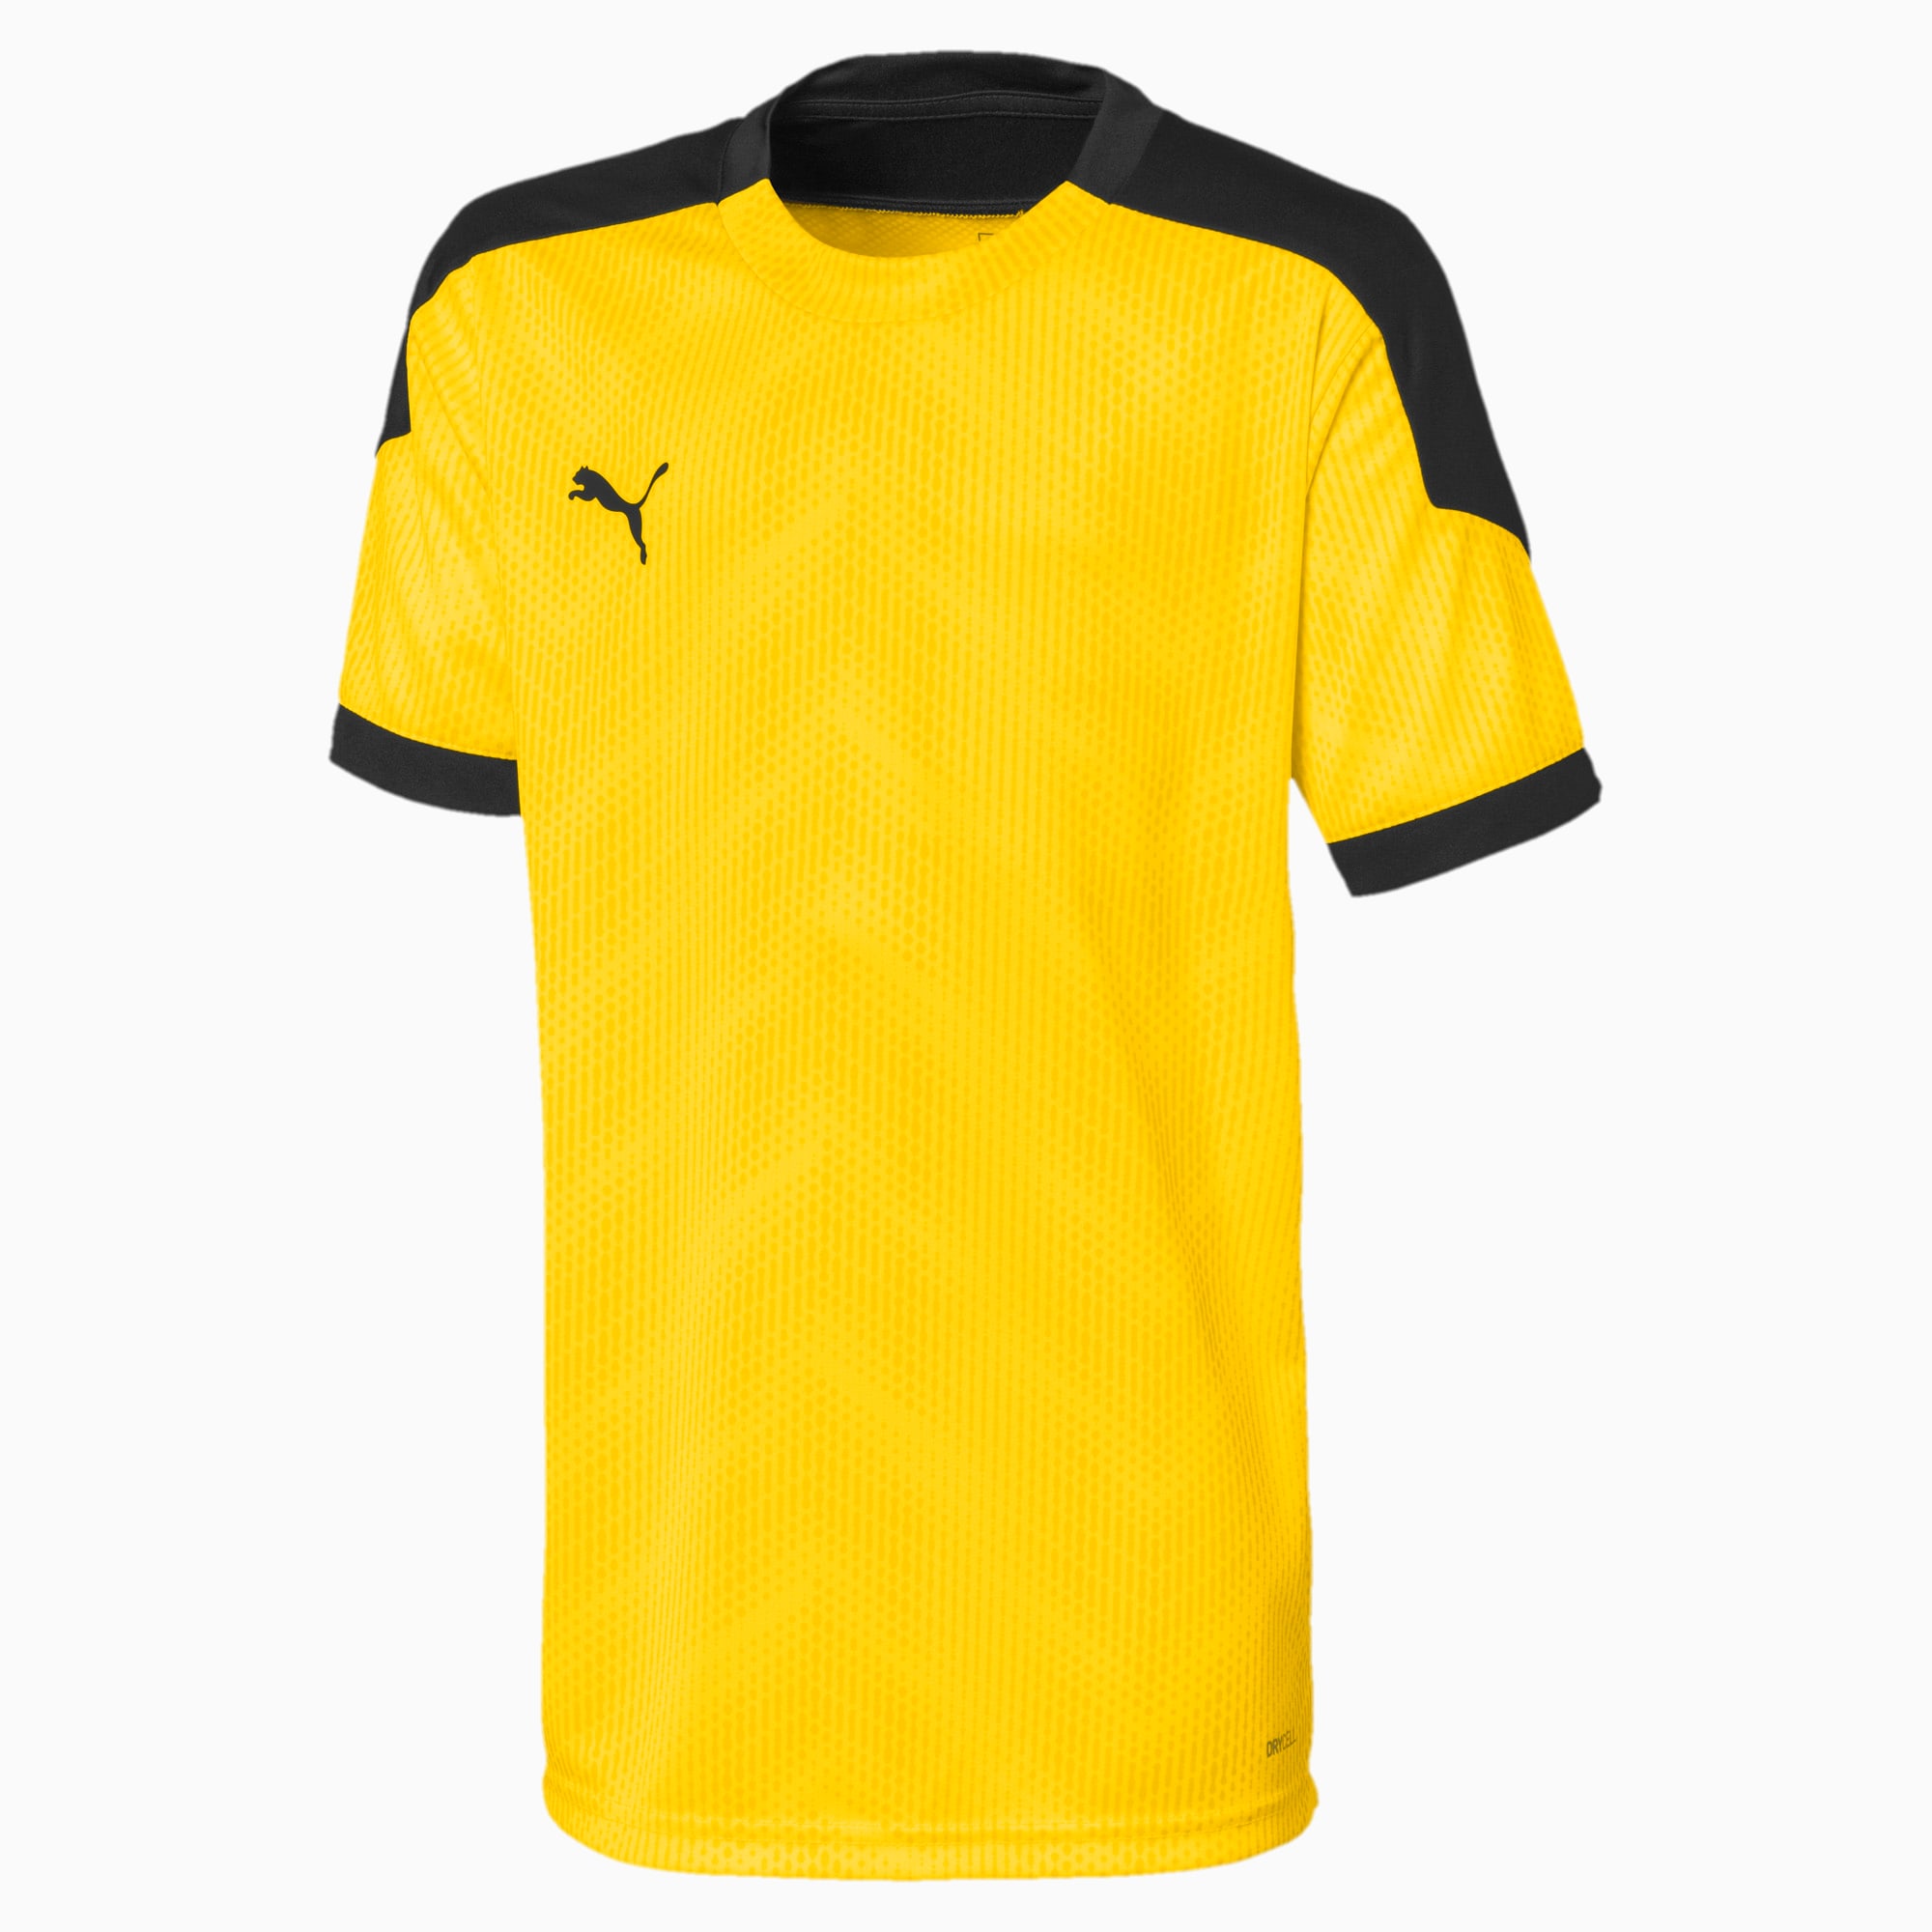 Image of PUMA ftblNXT Graphic Kinder Fußball T-Shirt | Mit Aucun | Gelb/Schwarz | Größe: 128